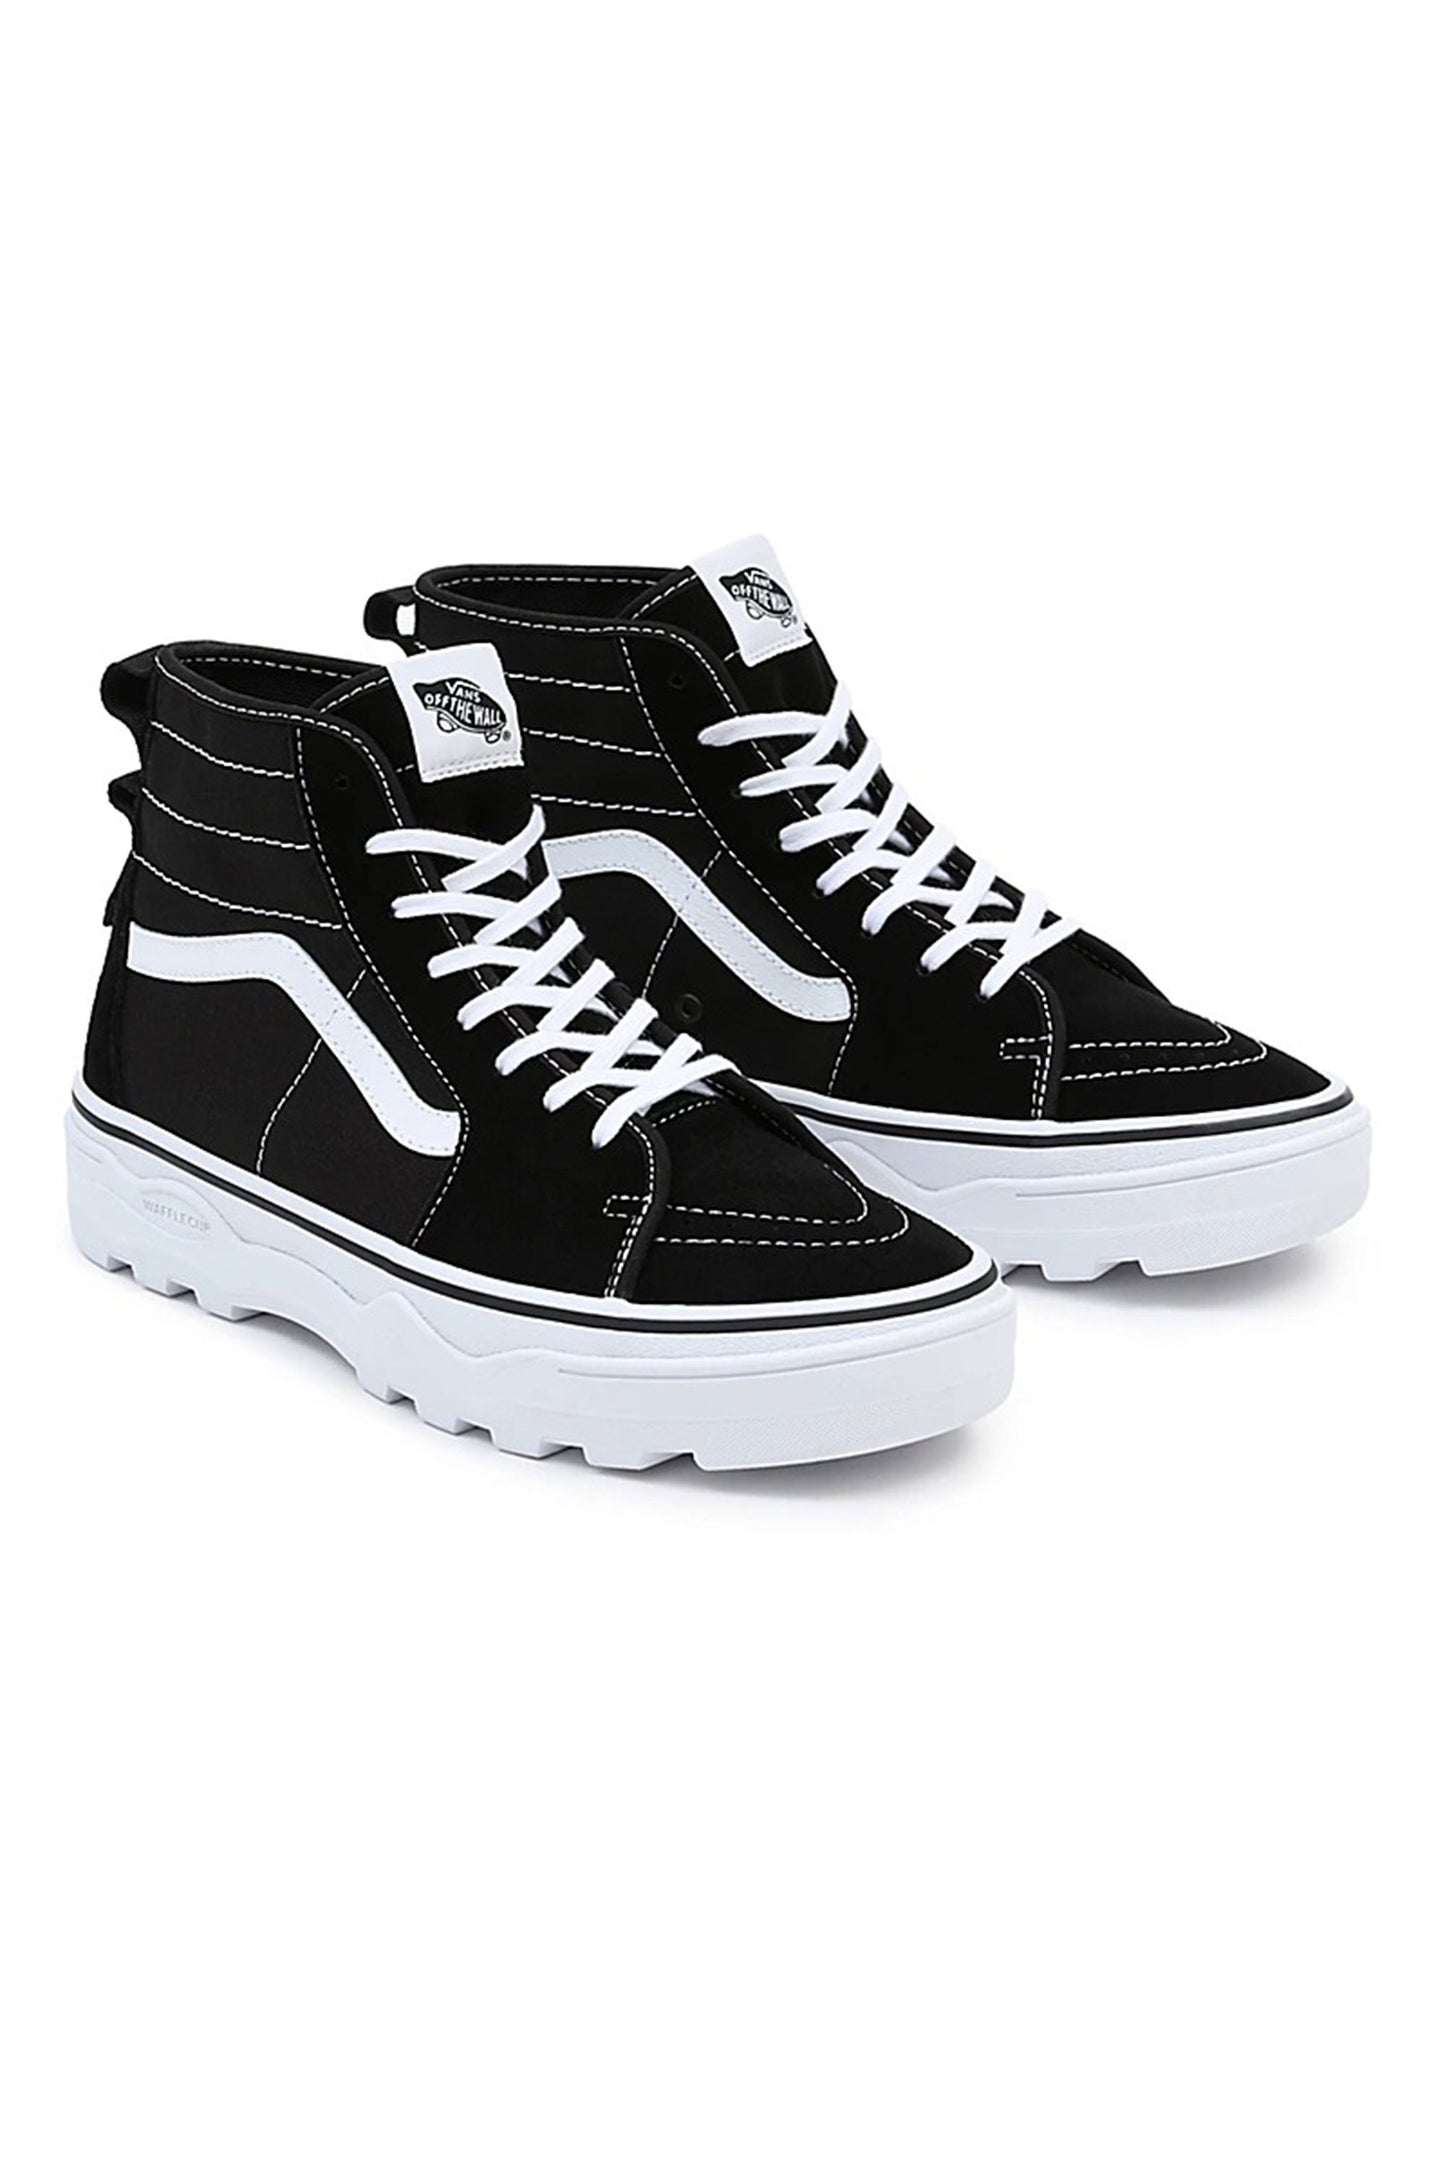    Pukas-Surf-Shop-vans-footwear-Sentry-Sk8-Hi-black-white